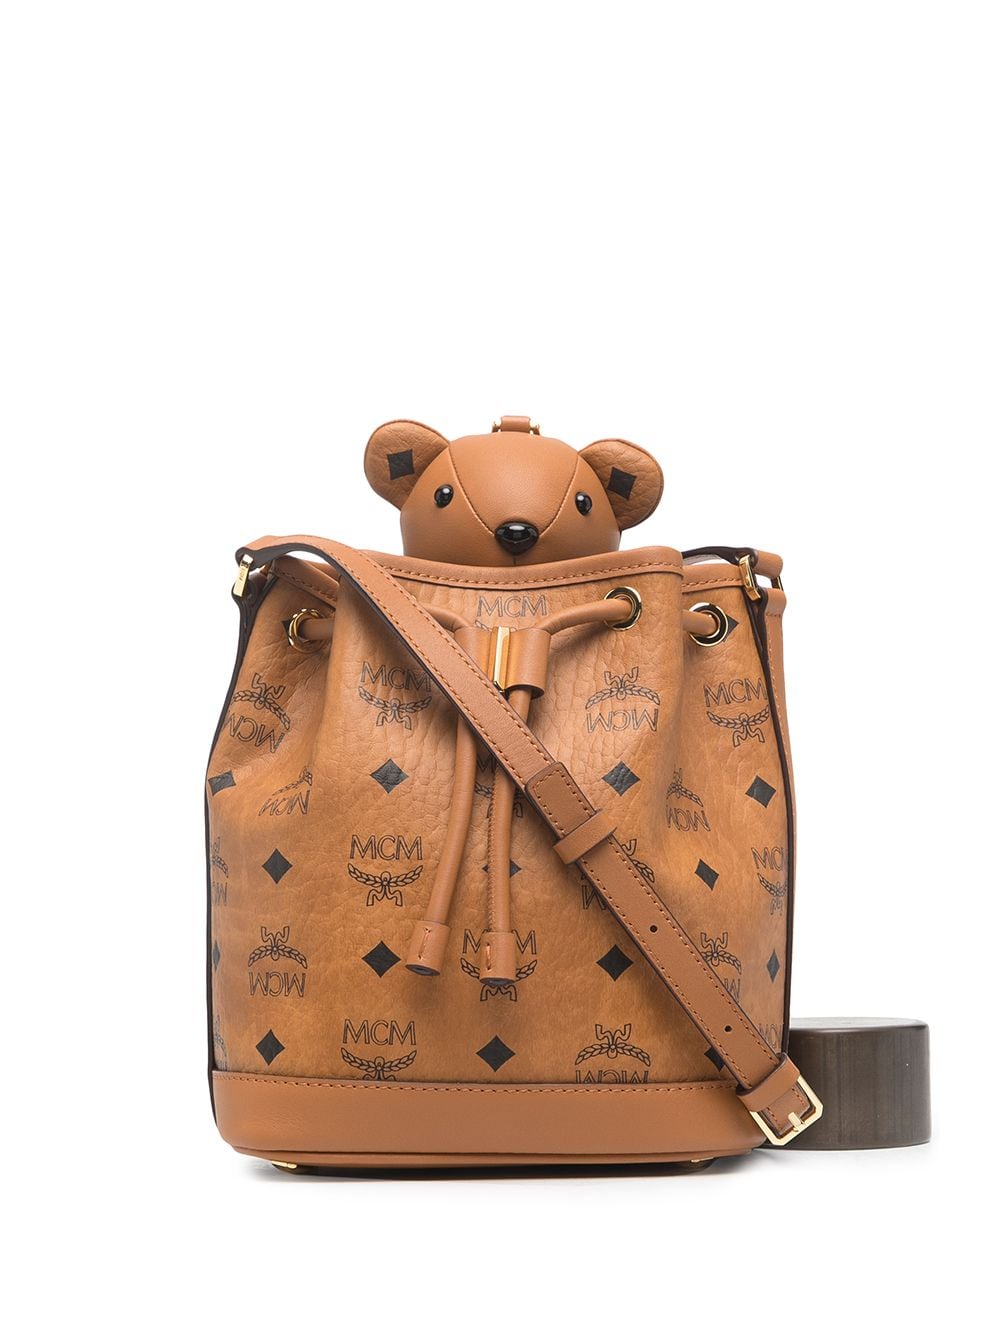 фото Mcm сумка-ведро teddy bear